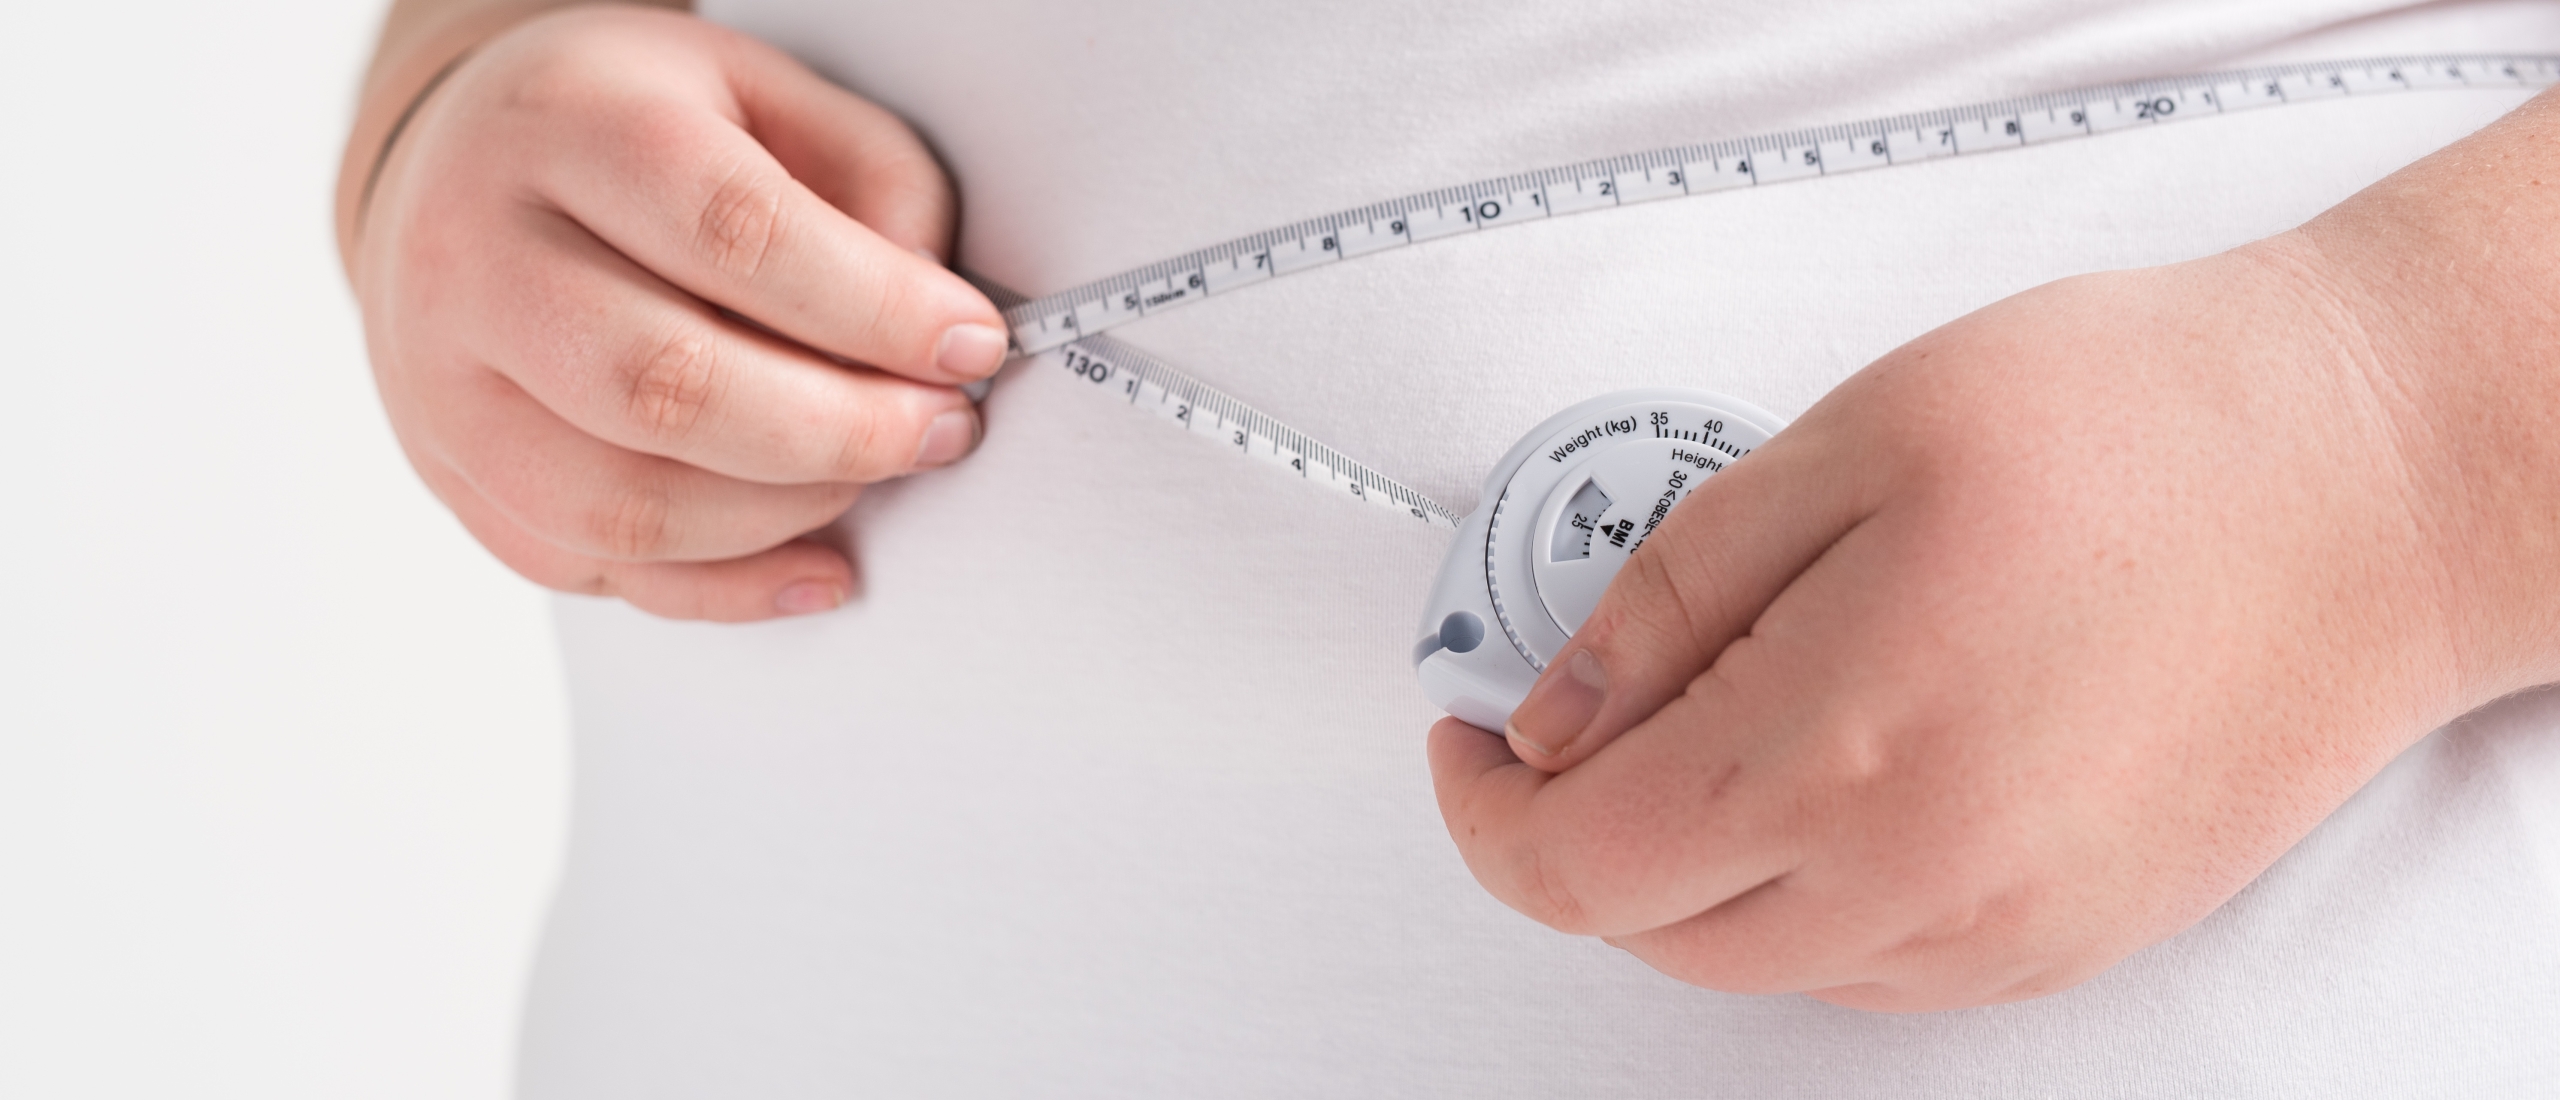 GGD'en: gelijke kansen nodig om overgewicht tegen te gaan